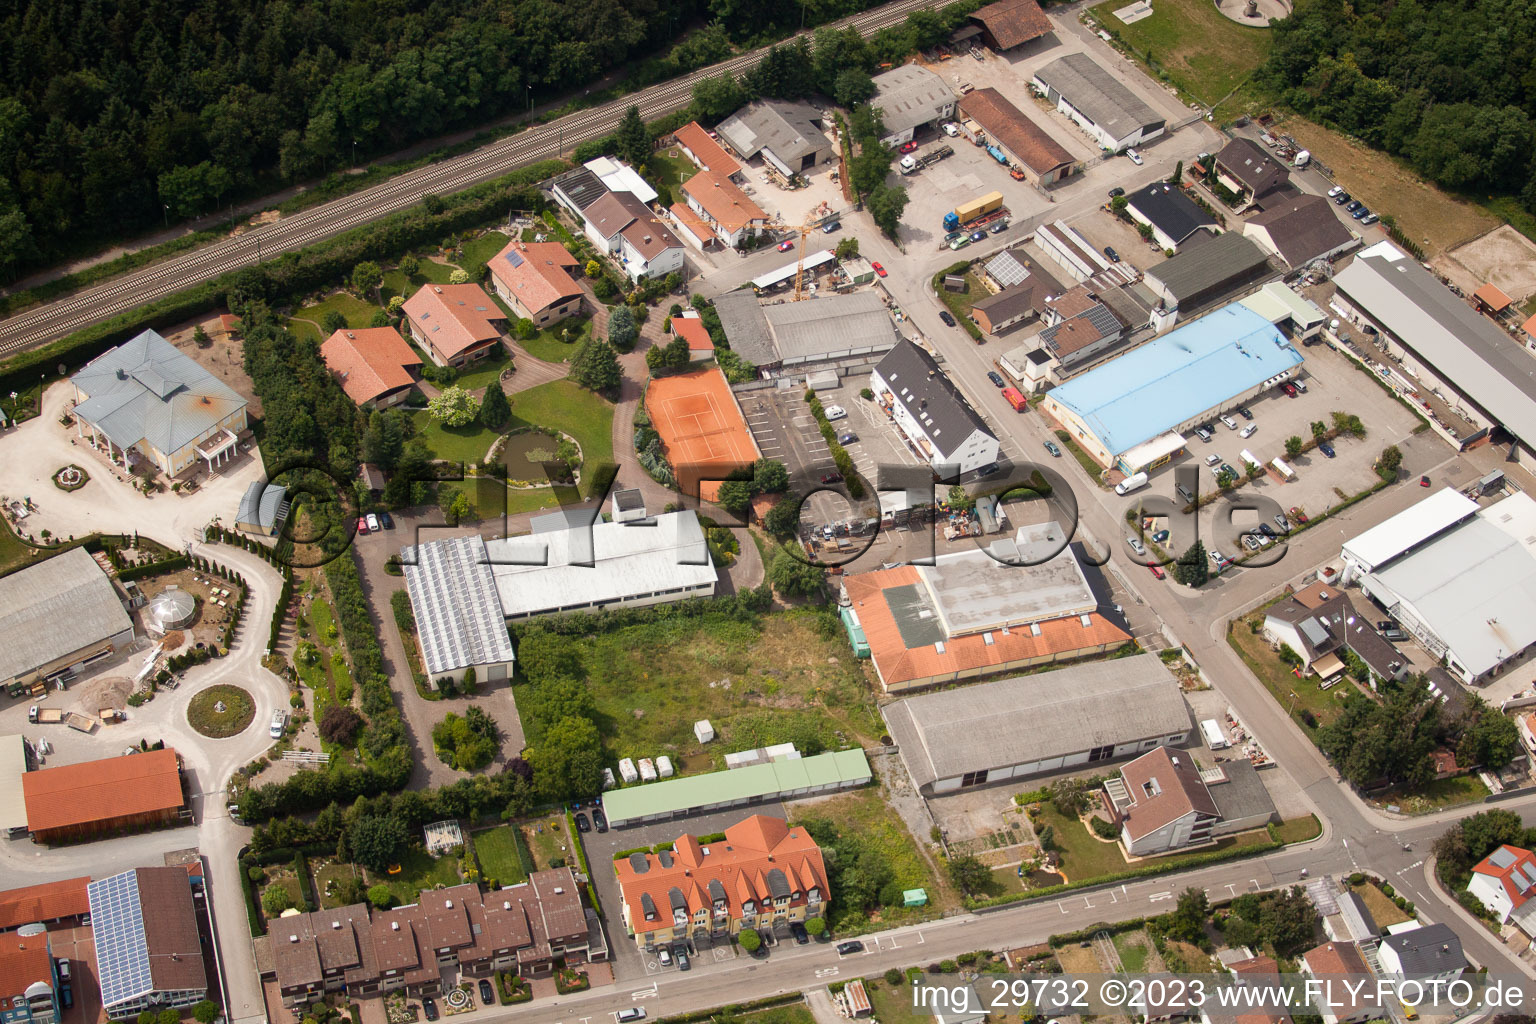 Vue aérienne de Jockgrim dans le département Rhénanie-Palatinat, Allemagne